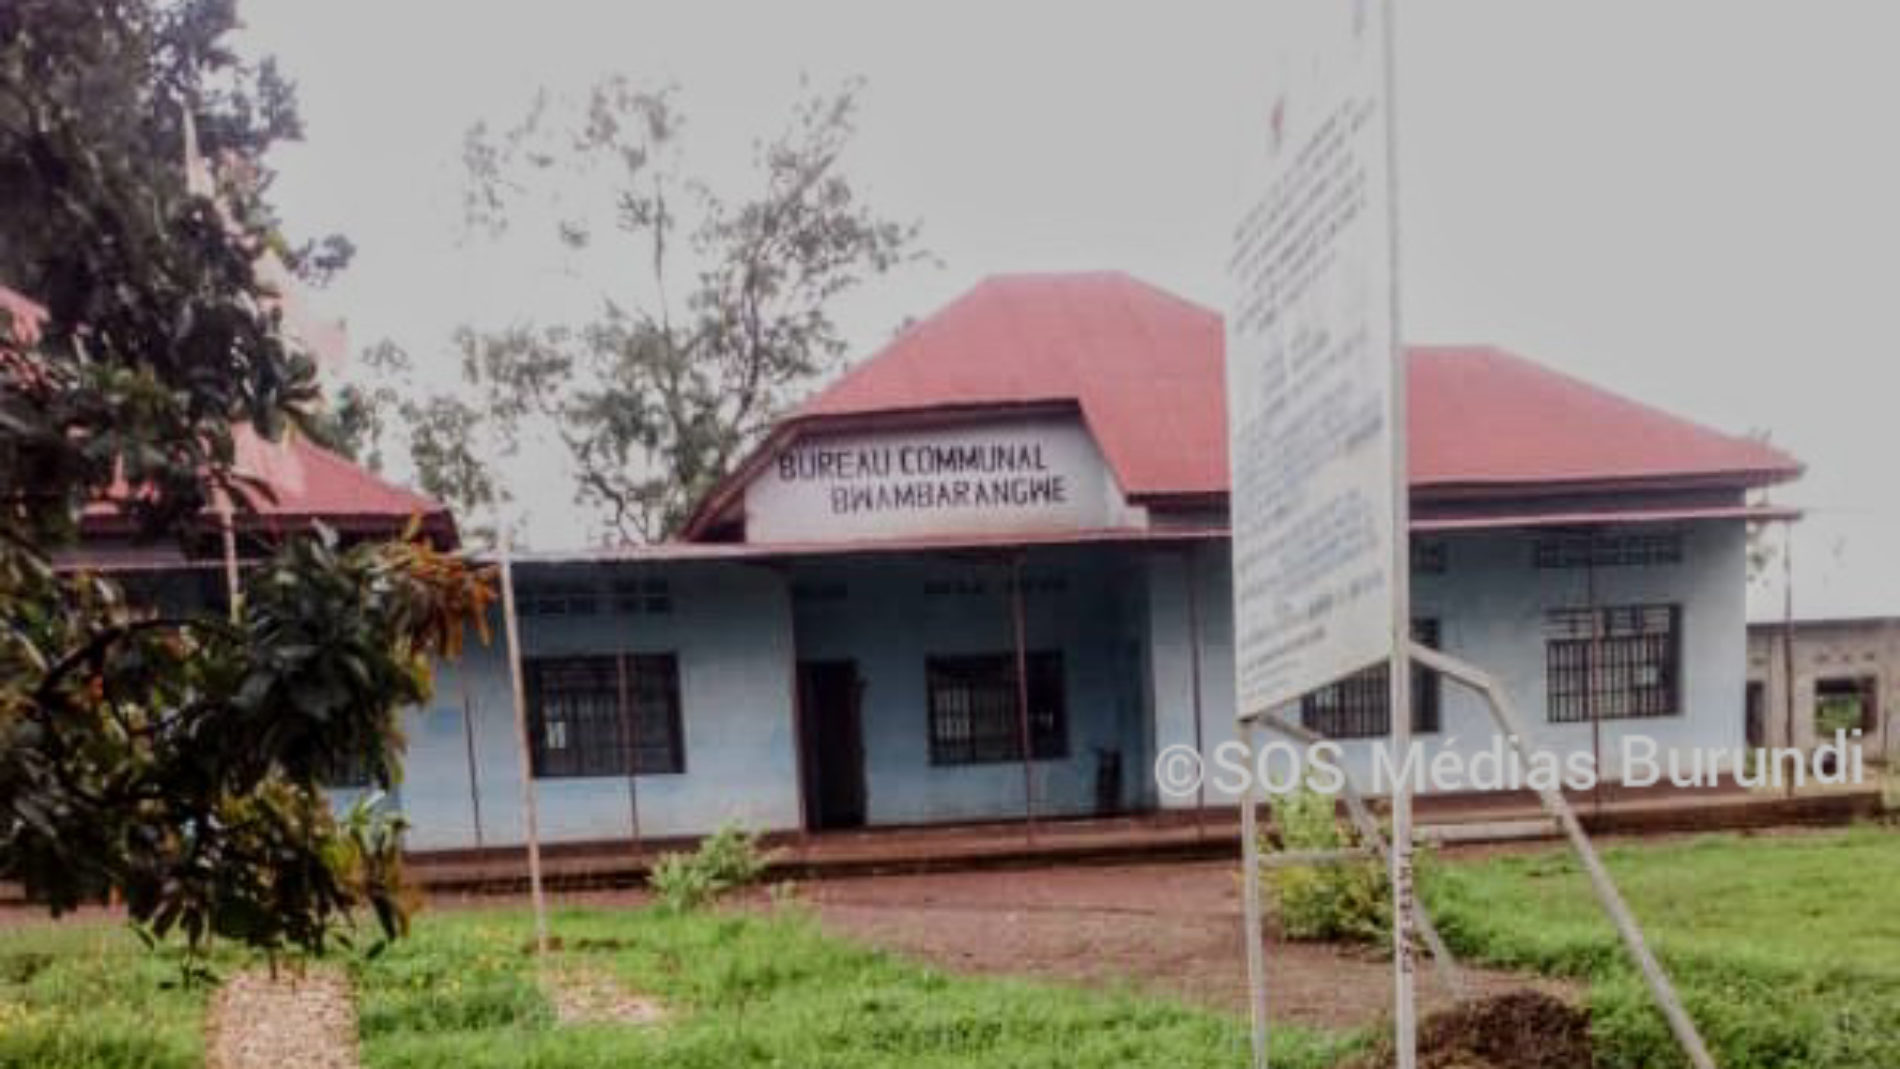 Bwambarangwe : vol du matériel à l’hôpital de Mukenke, le personnel exige une enquête indépendante